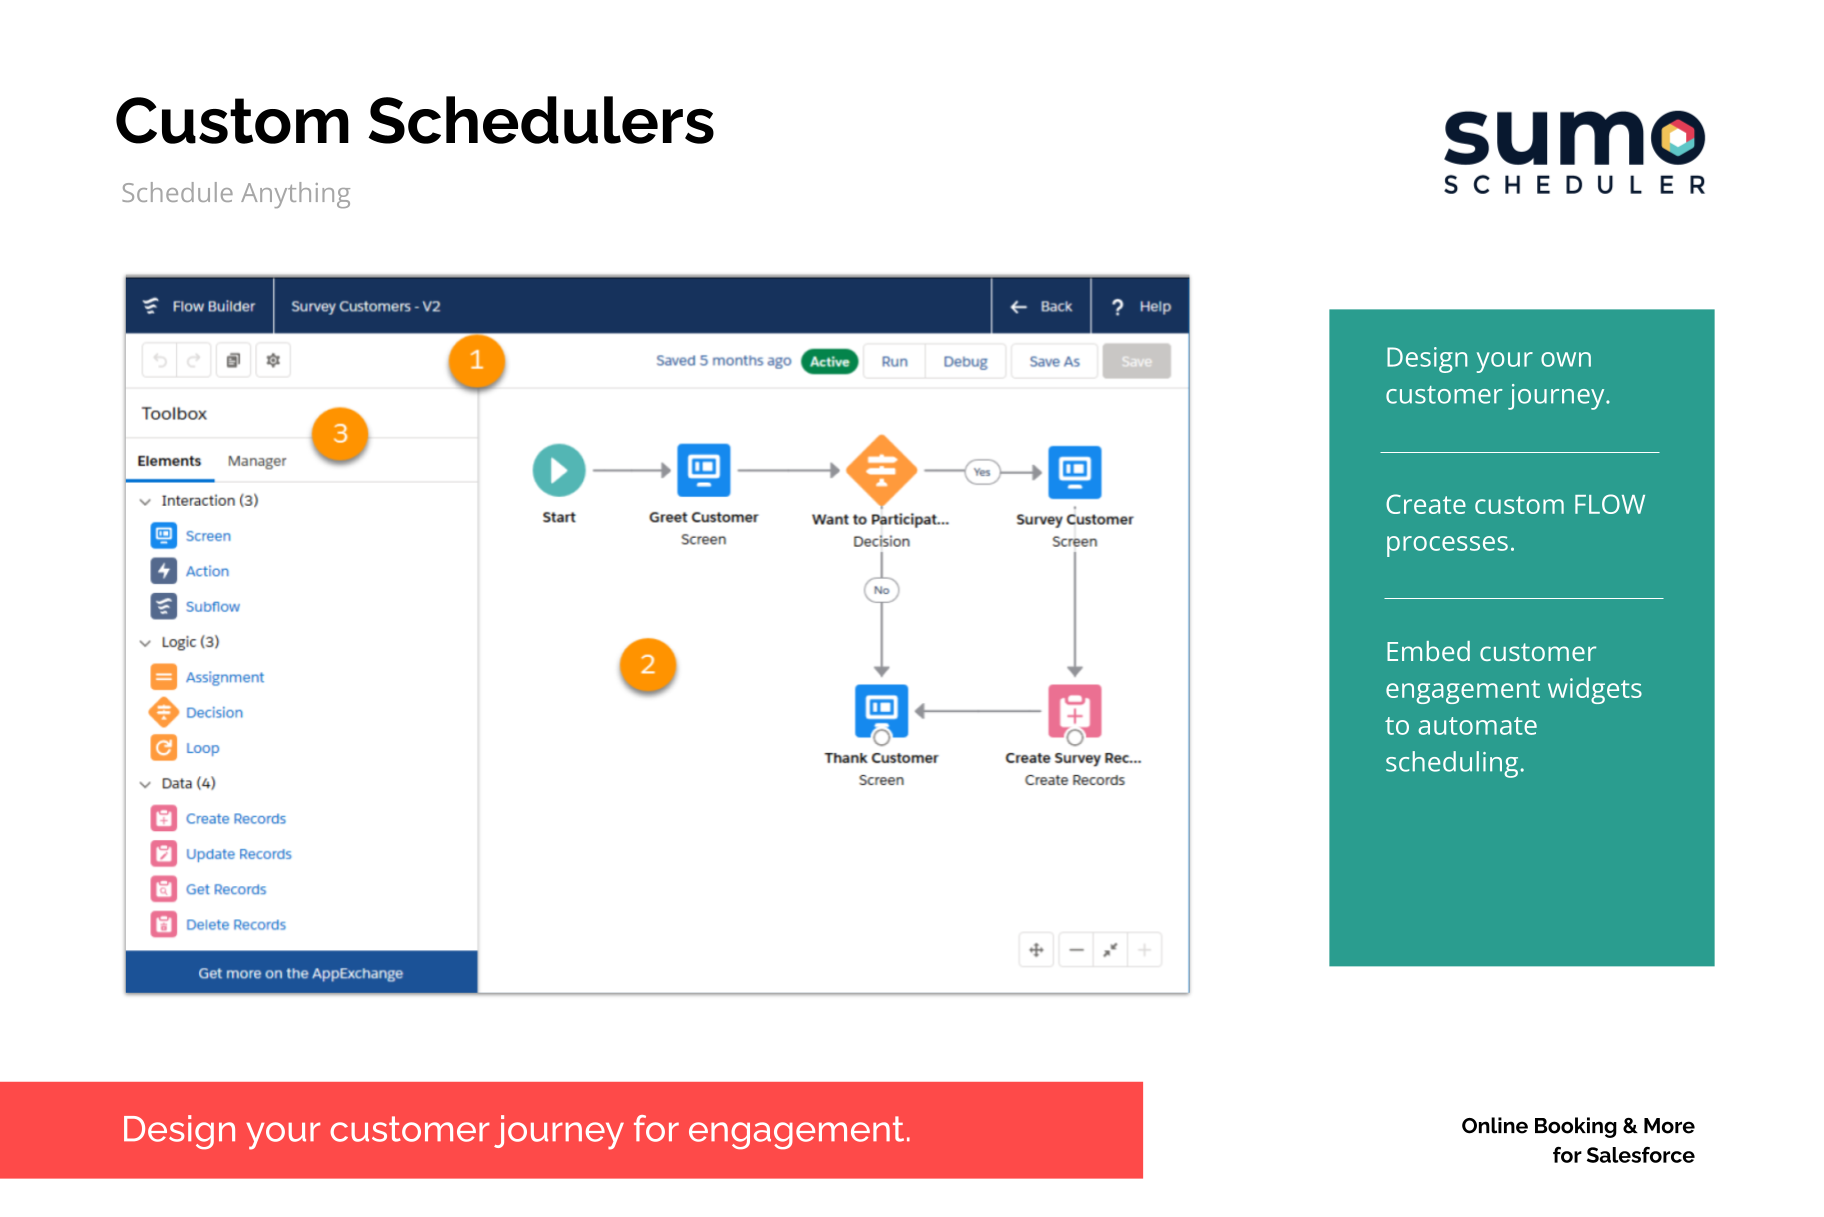 SUMO Scheduler custom scheduling